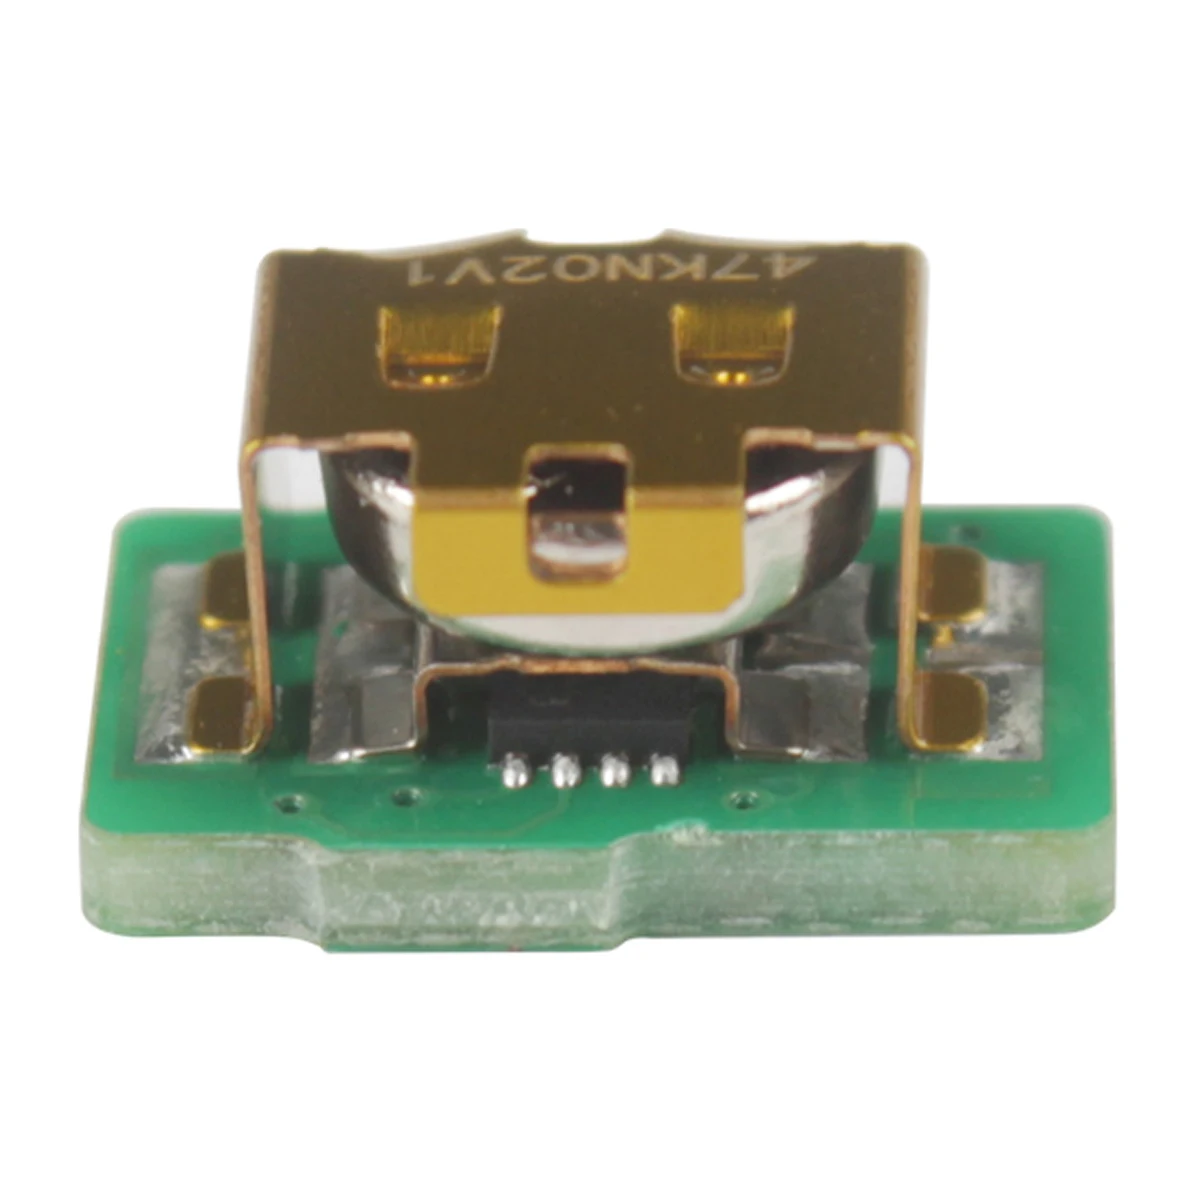 

Toner Chip For Brother HL-L3210 HL-L3230 HL-L3270 HL-L3290 MFC-L3710 MFC-L3745 MFC-L3750 MFC-L3770 DCP-L3517 DCP-L3550 CW CDW